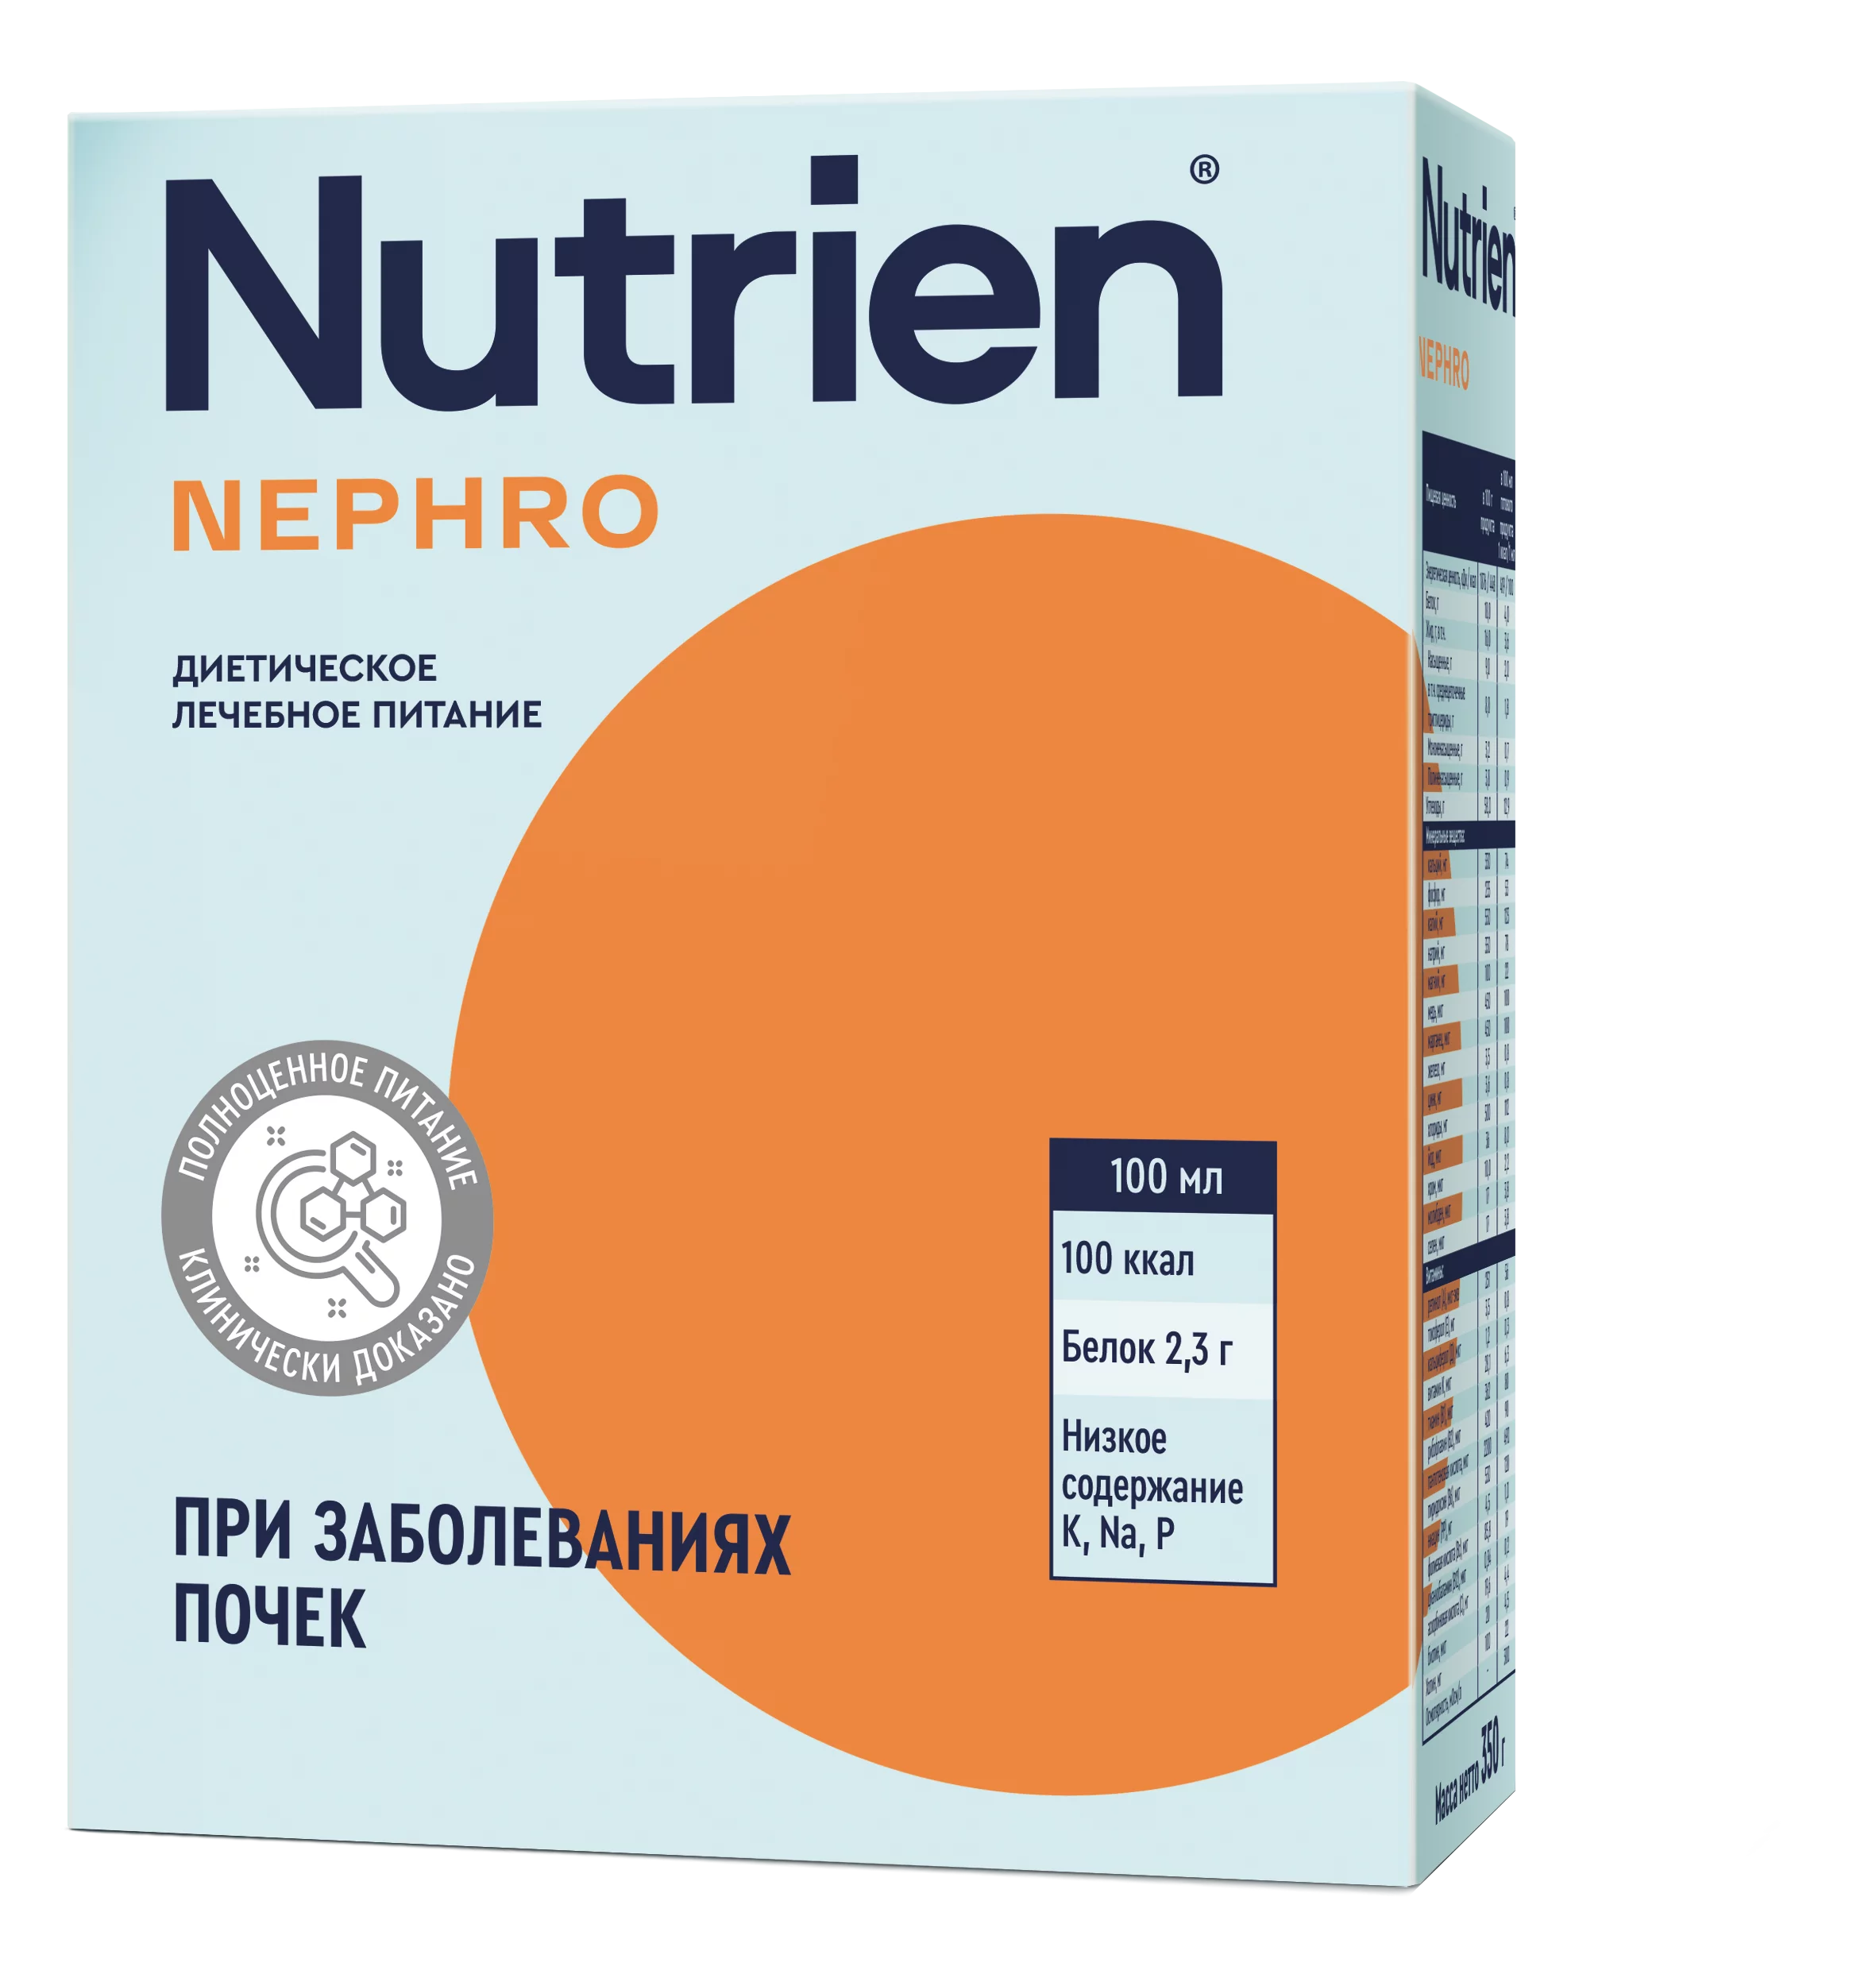 Nutrien Nephro